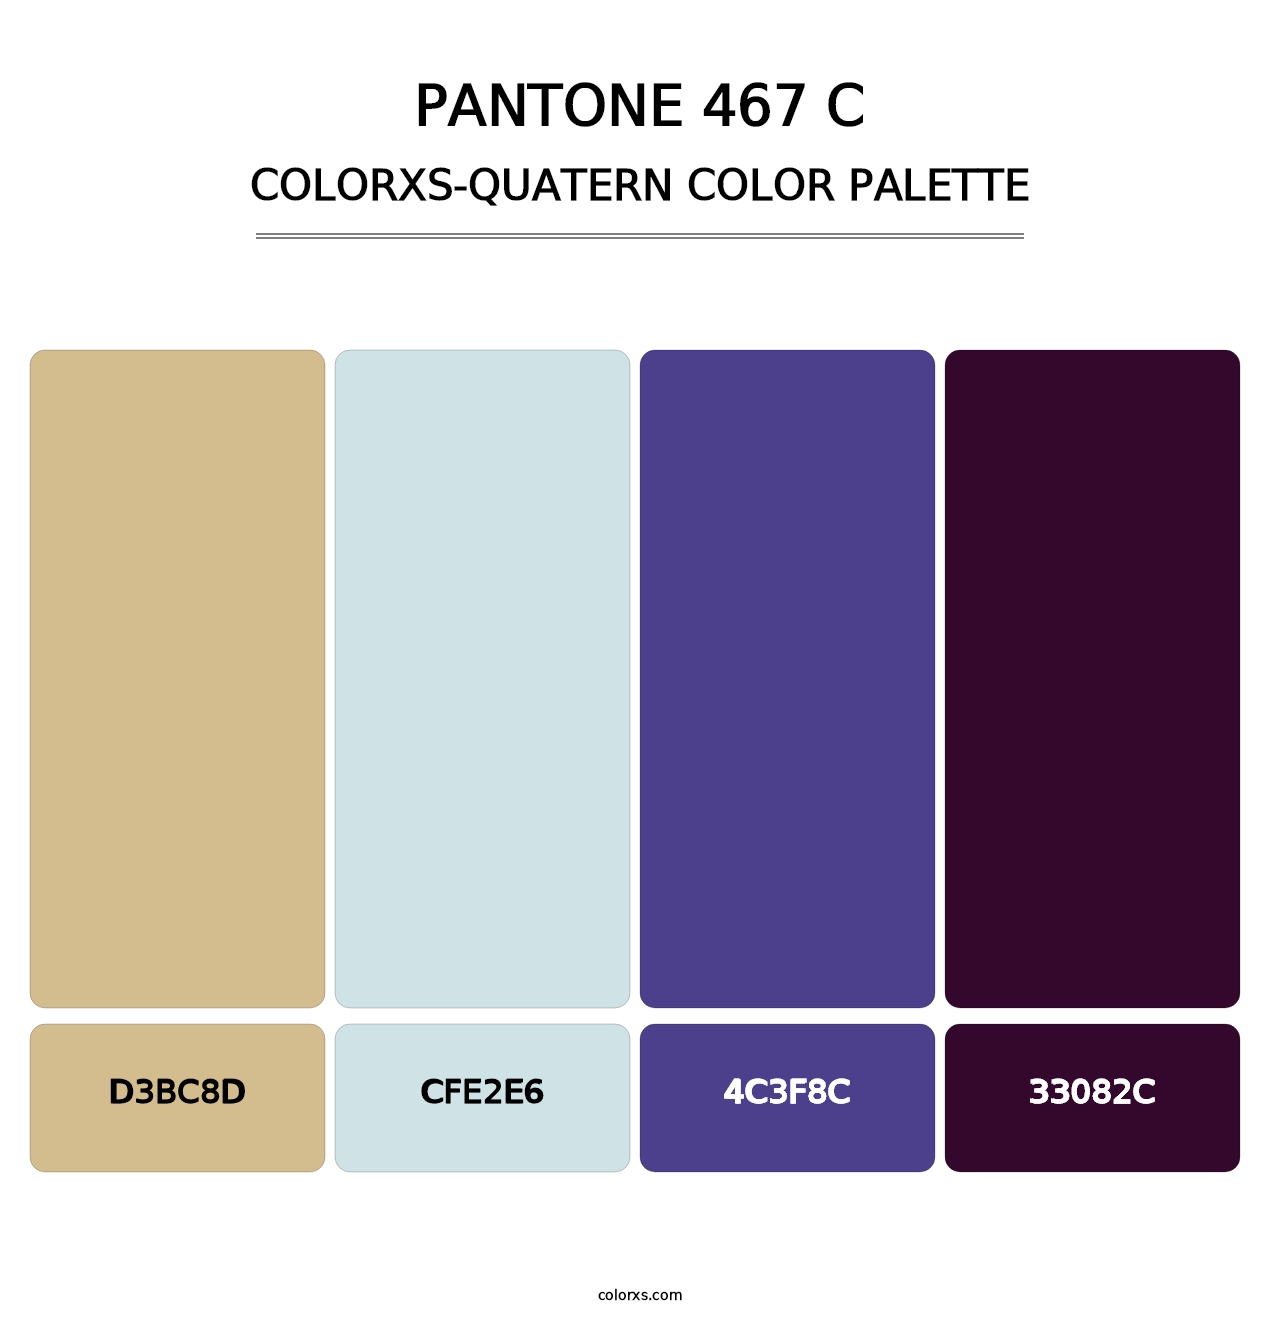 PANTONE 467 C - Colorxs Quatern Palette